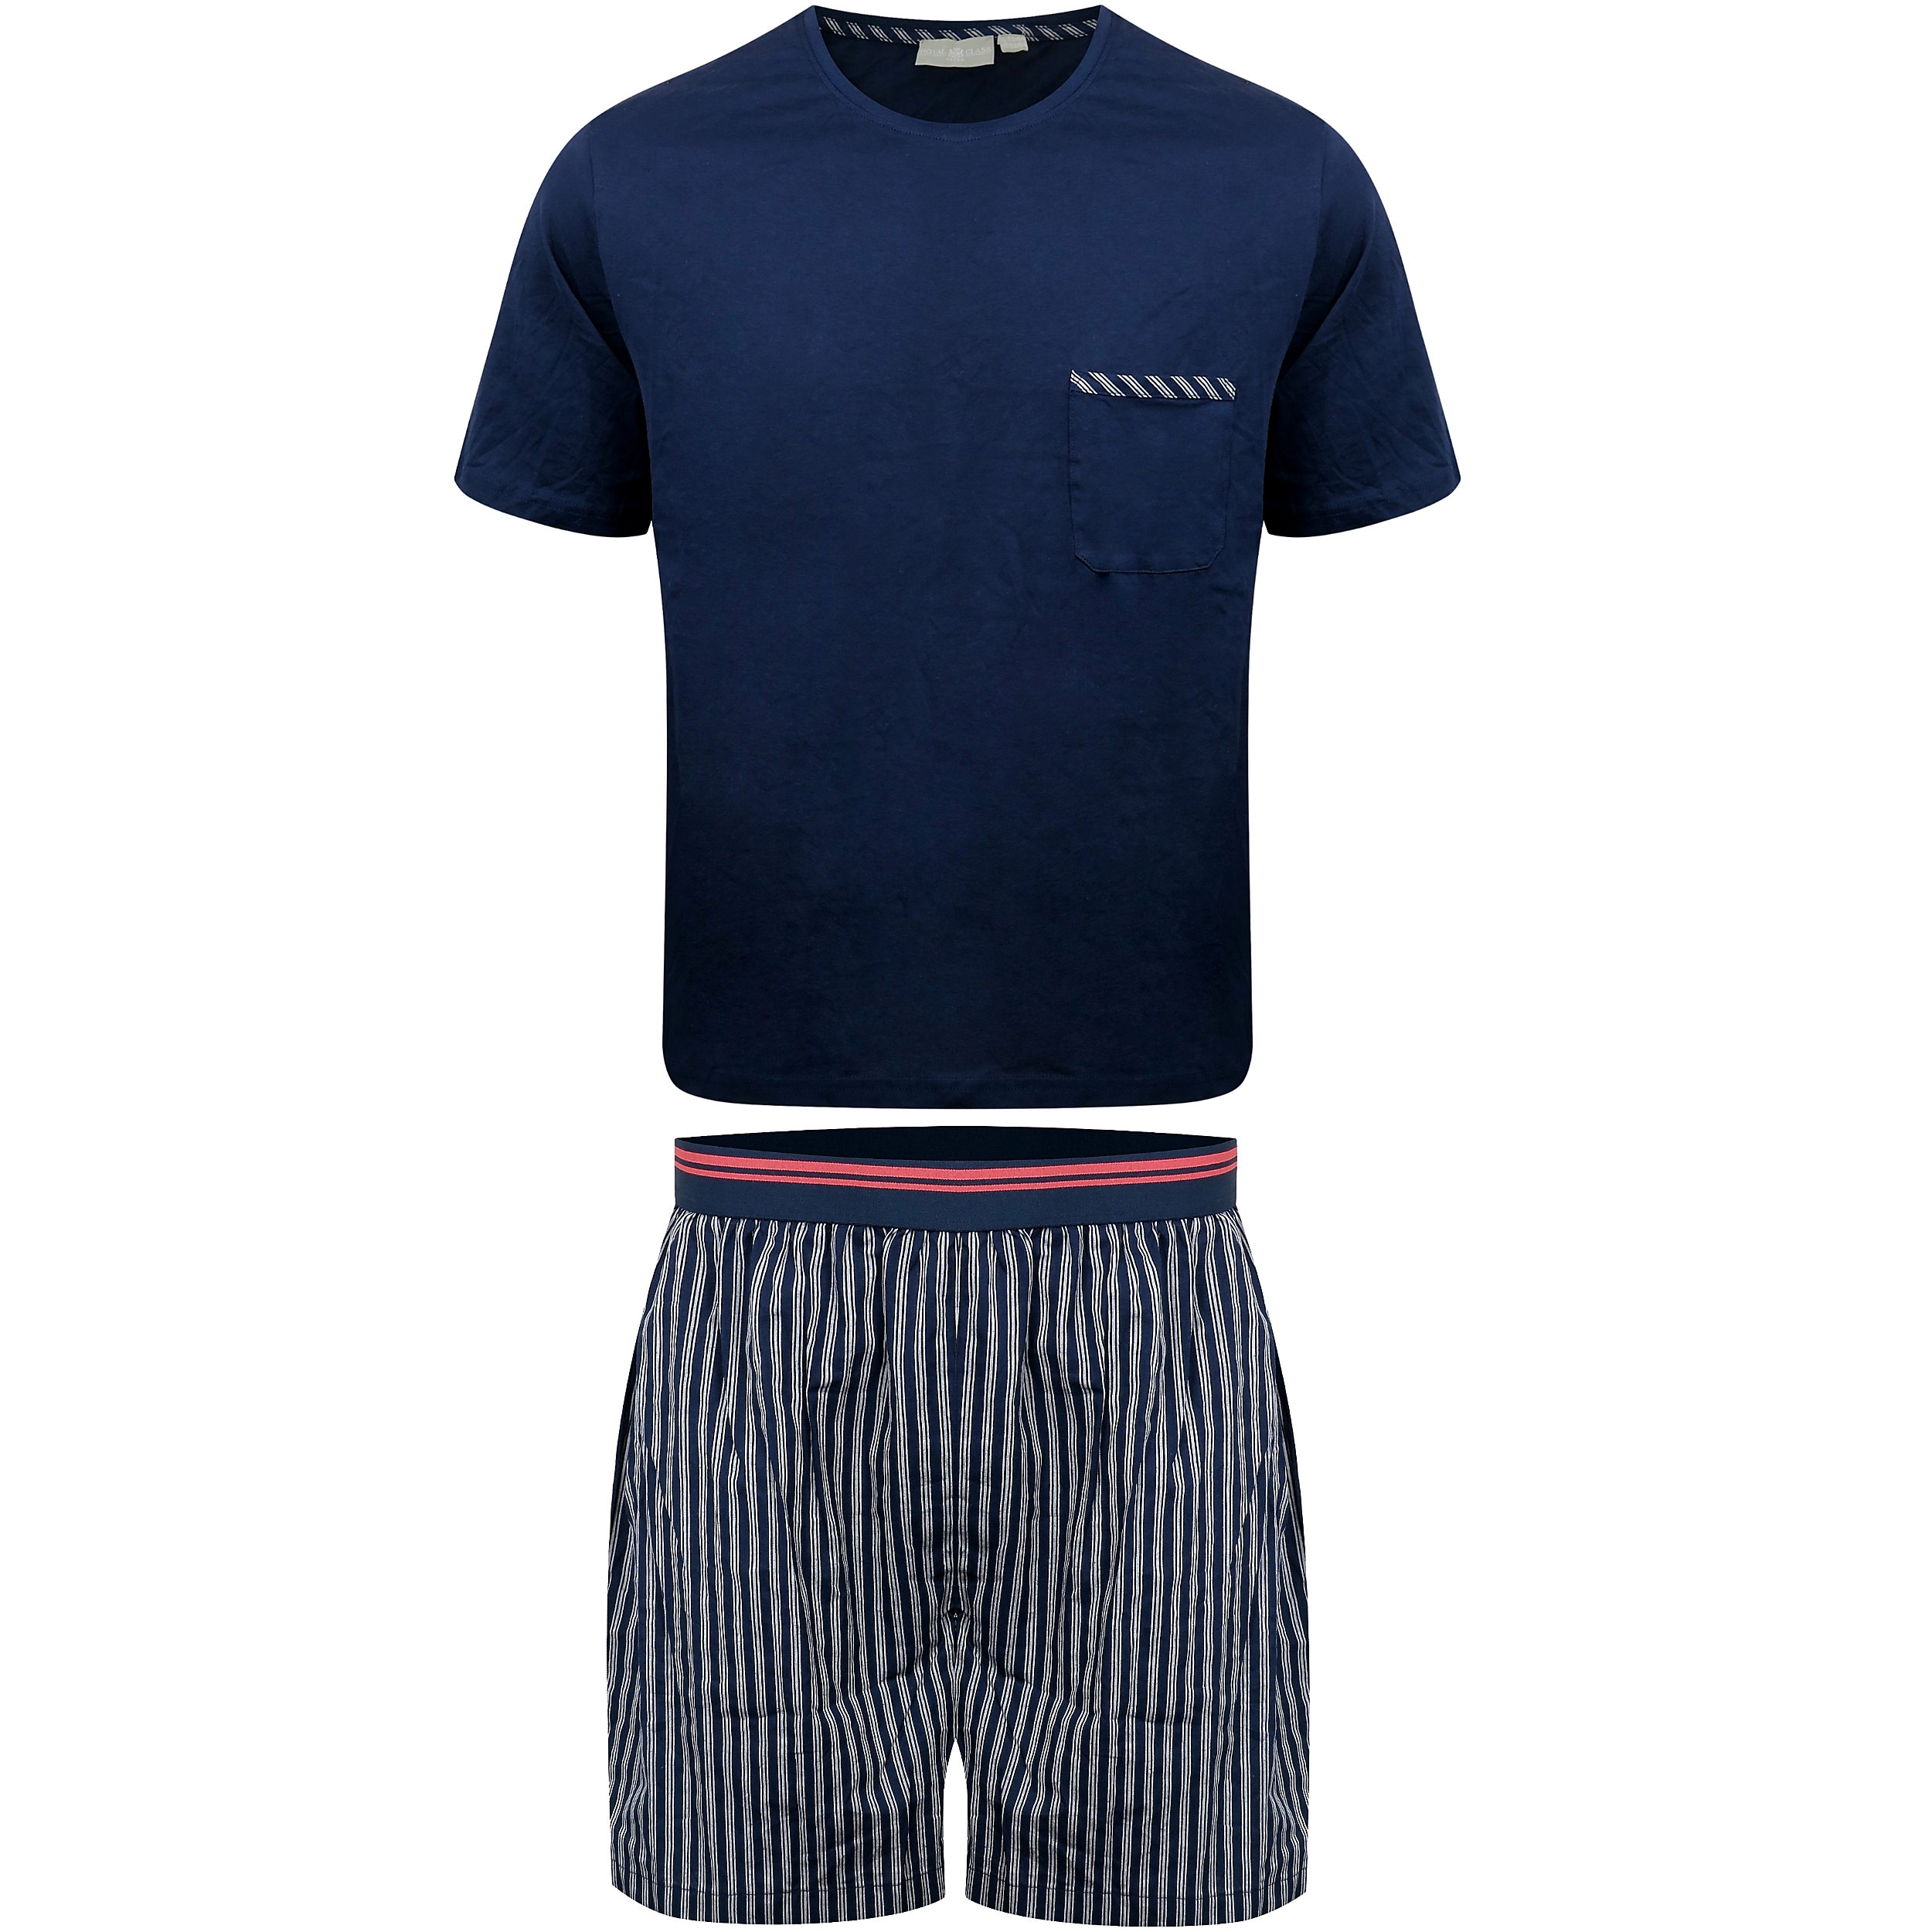 ست تی شرت آستین کوتاه و شلوارک مردانه رویال کلس مدل PyjamaHome5